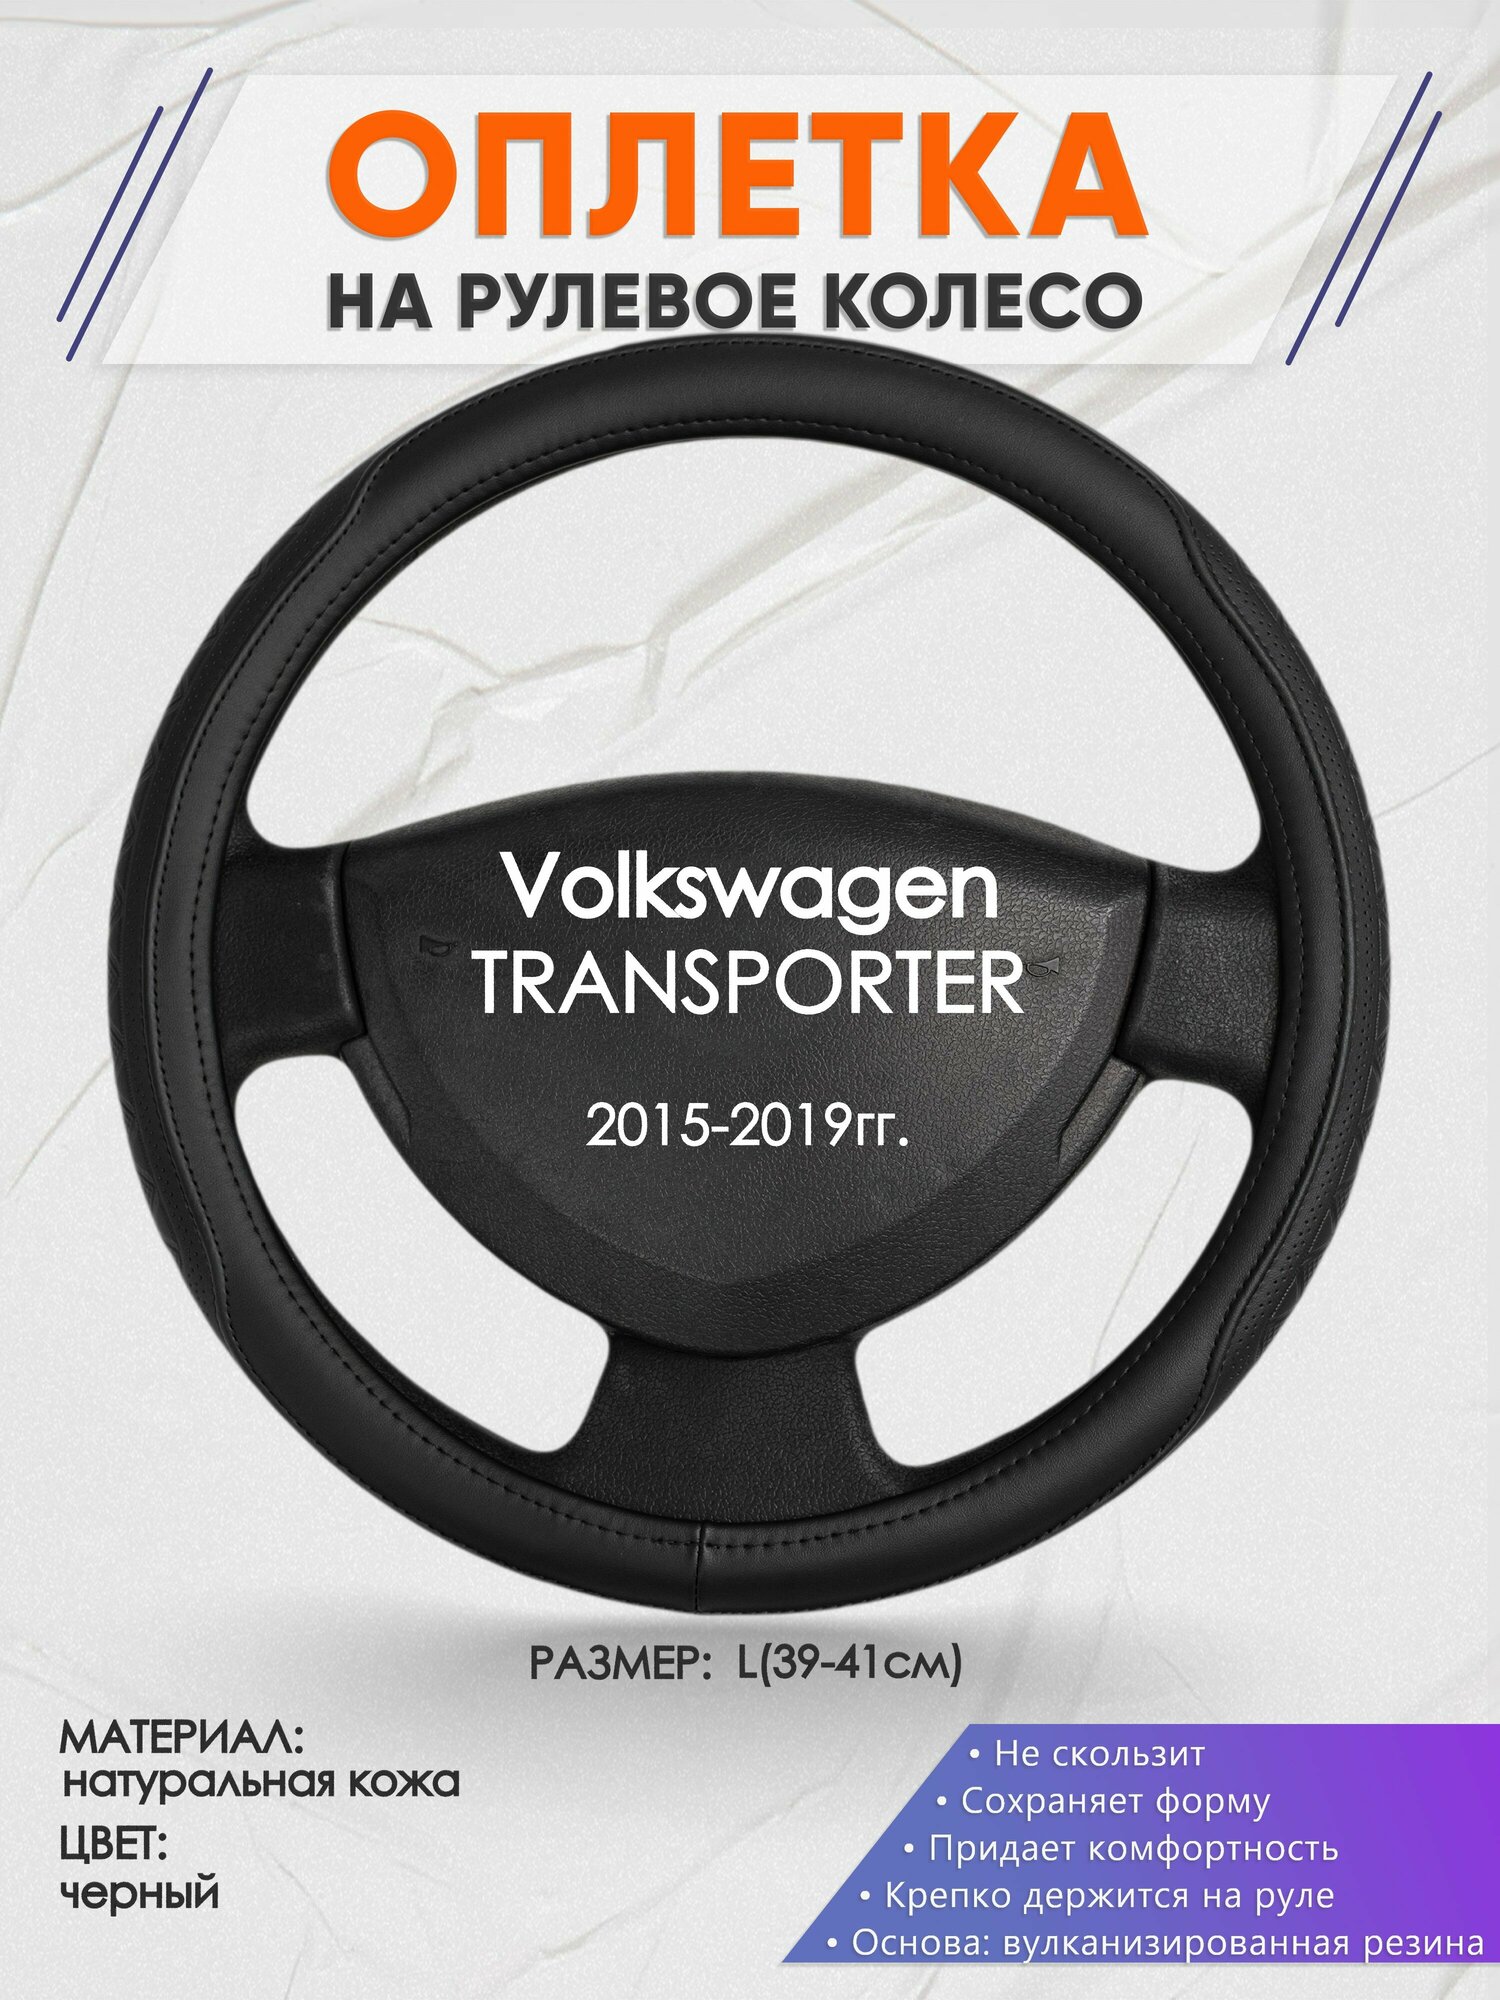 Оплетка на руль для Volkswagen TRANSPORTER(Фольксваген транспортер) 2015-2019, L(39-41см), Натуральная кожа 28